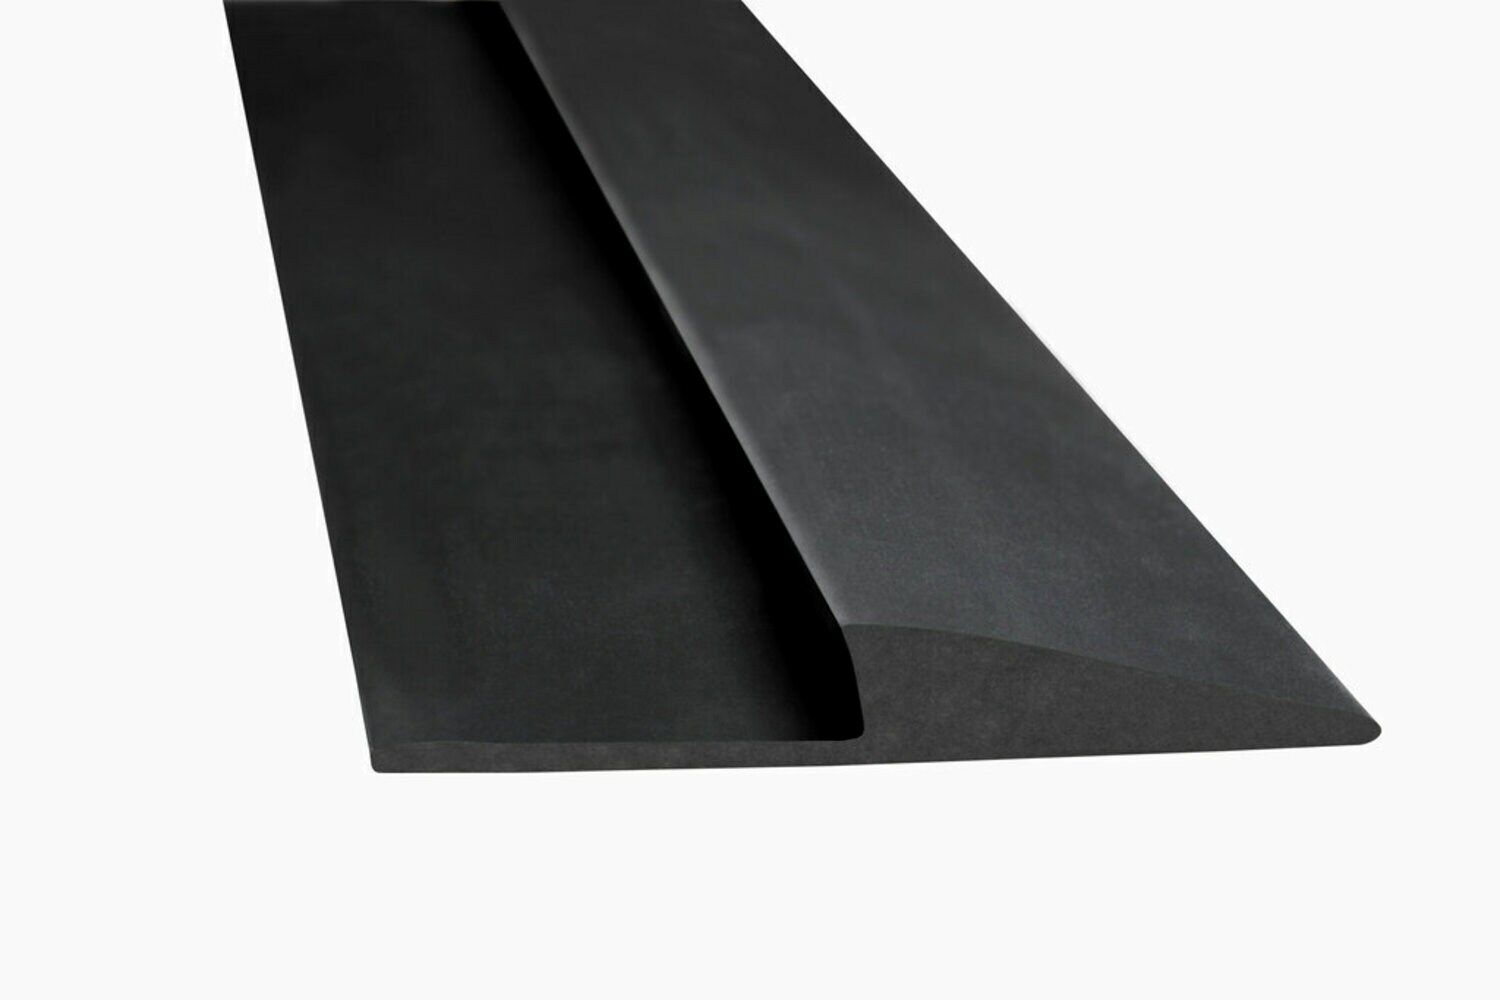 7000028463 - 3M Matting Edging Roll, Medium Profile, Black, 1 in x 75 ft, 1/Case